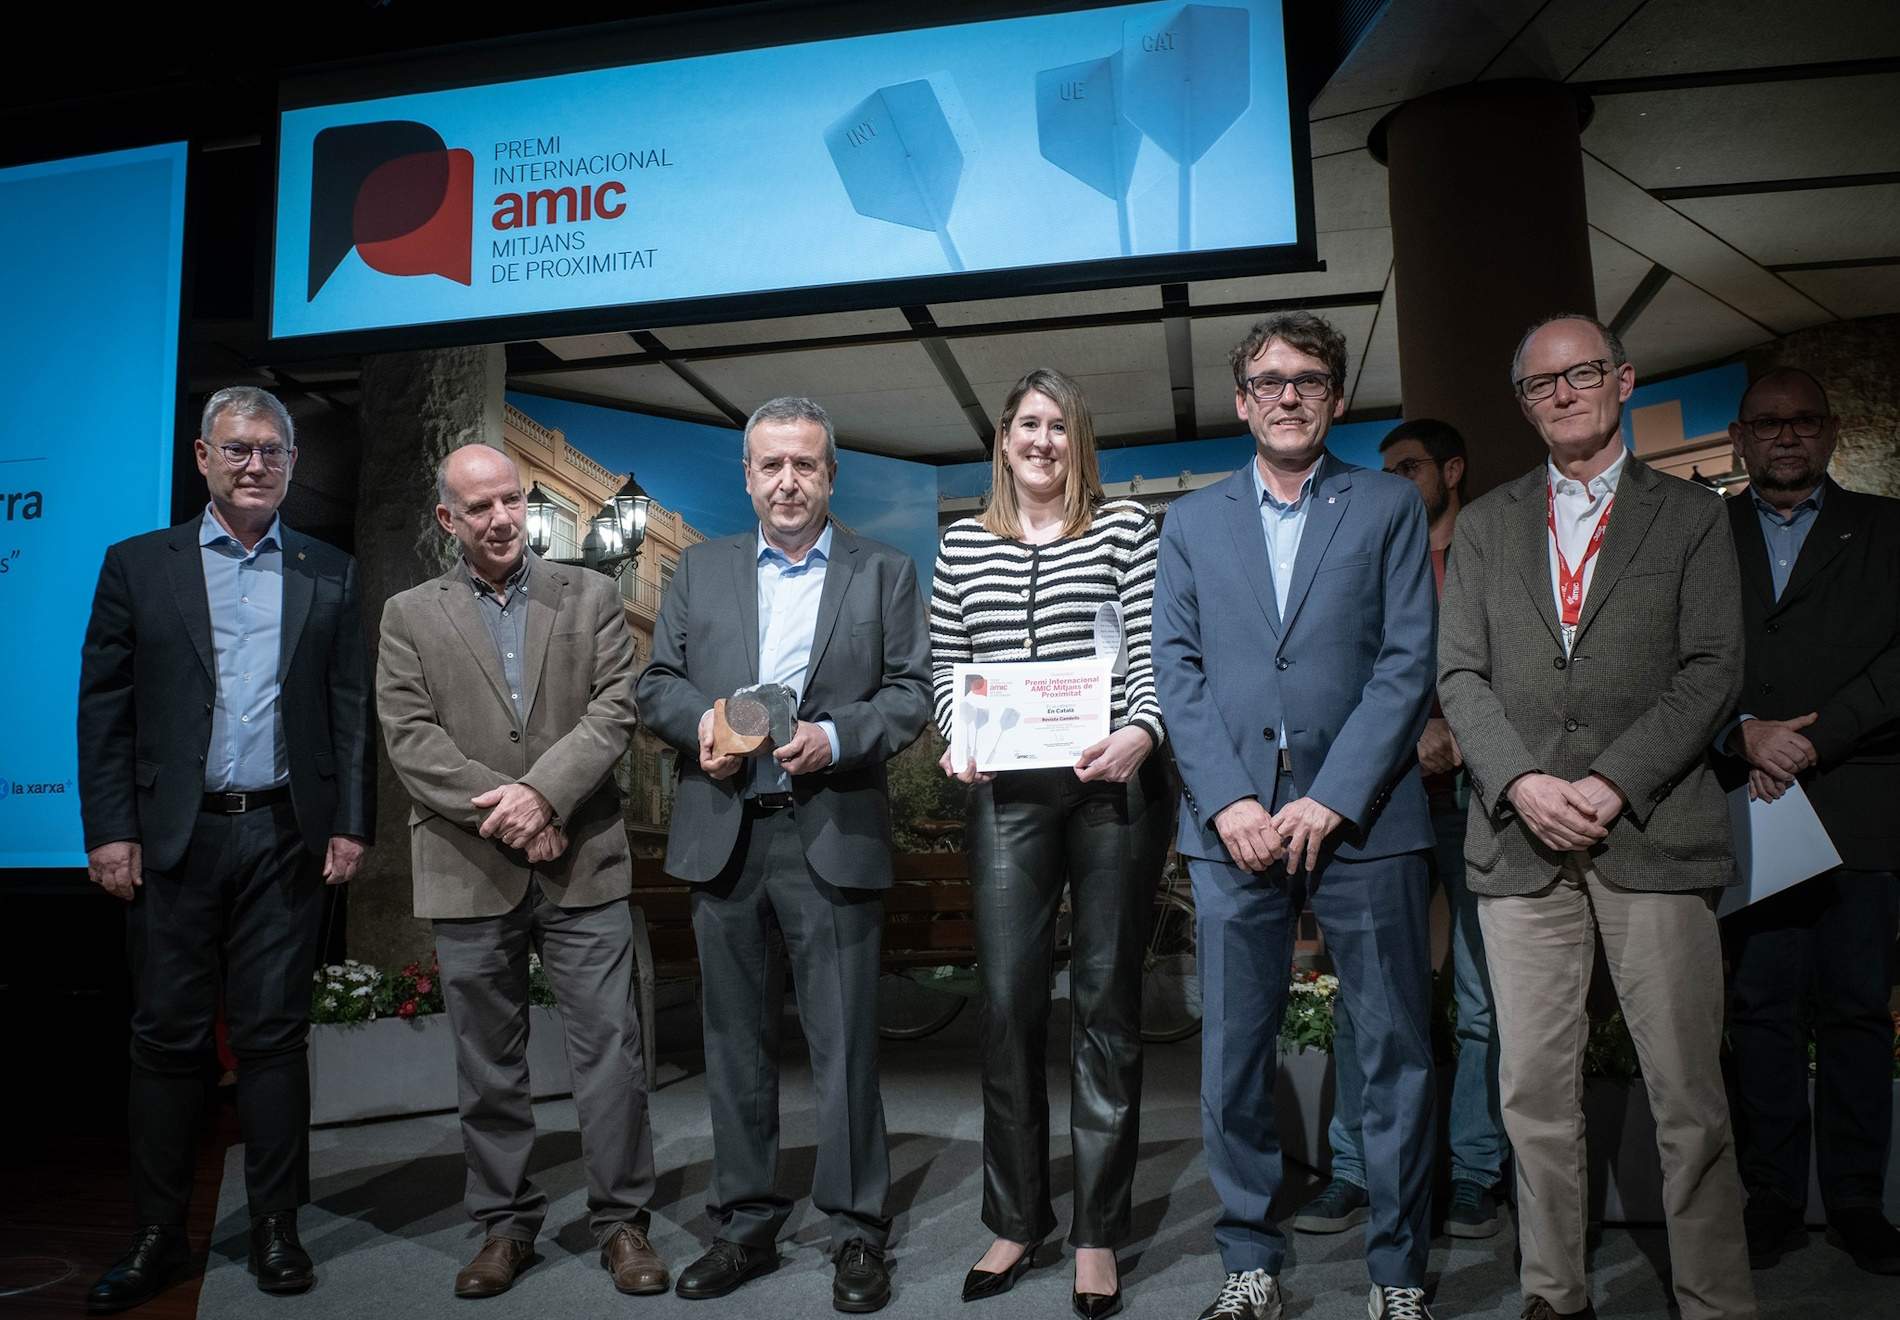 La 'Revista Cambrils' guanya el Premi Internacional AMIC Mitjans de Proximitat en llengua catalana